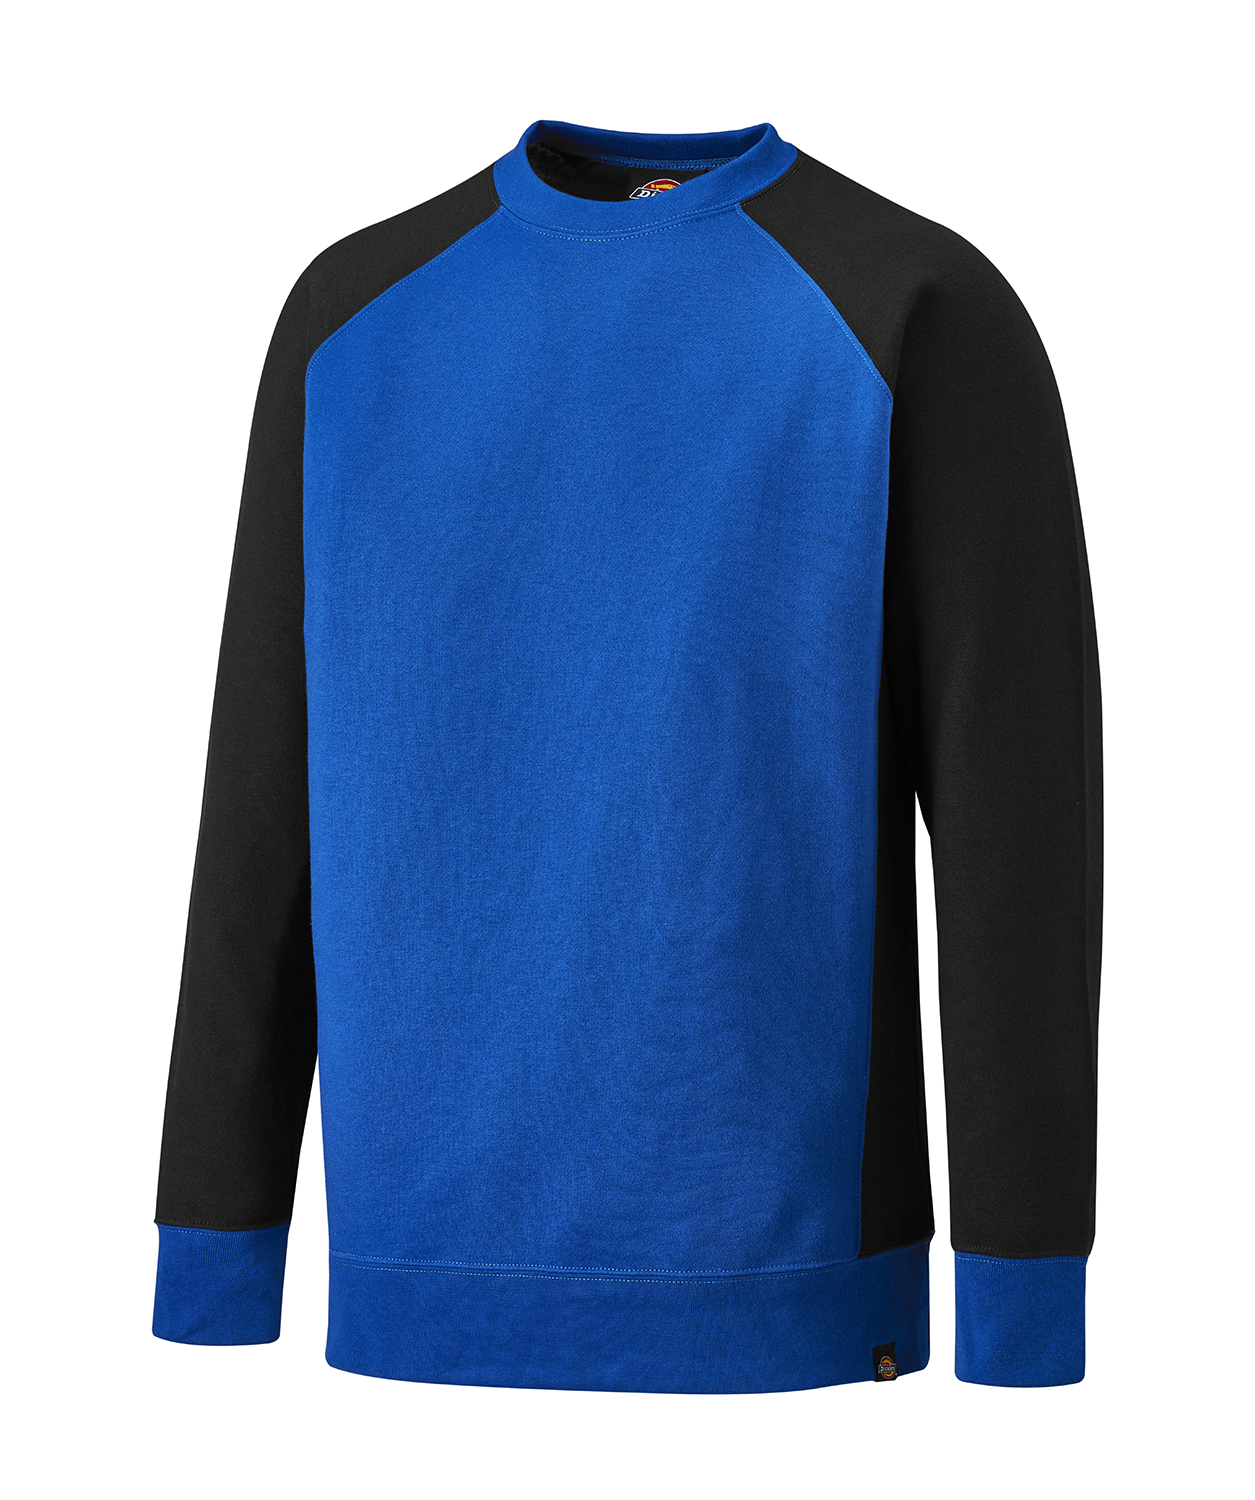 Dickies Unisex Two Tone Sweatshirt, kornblau/schwarz